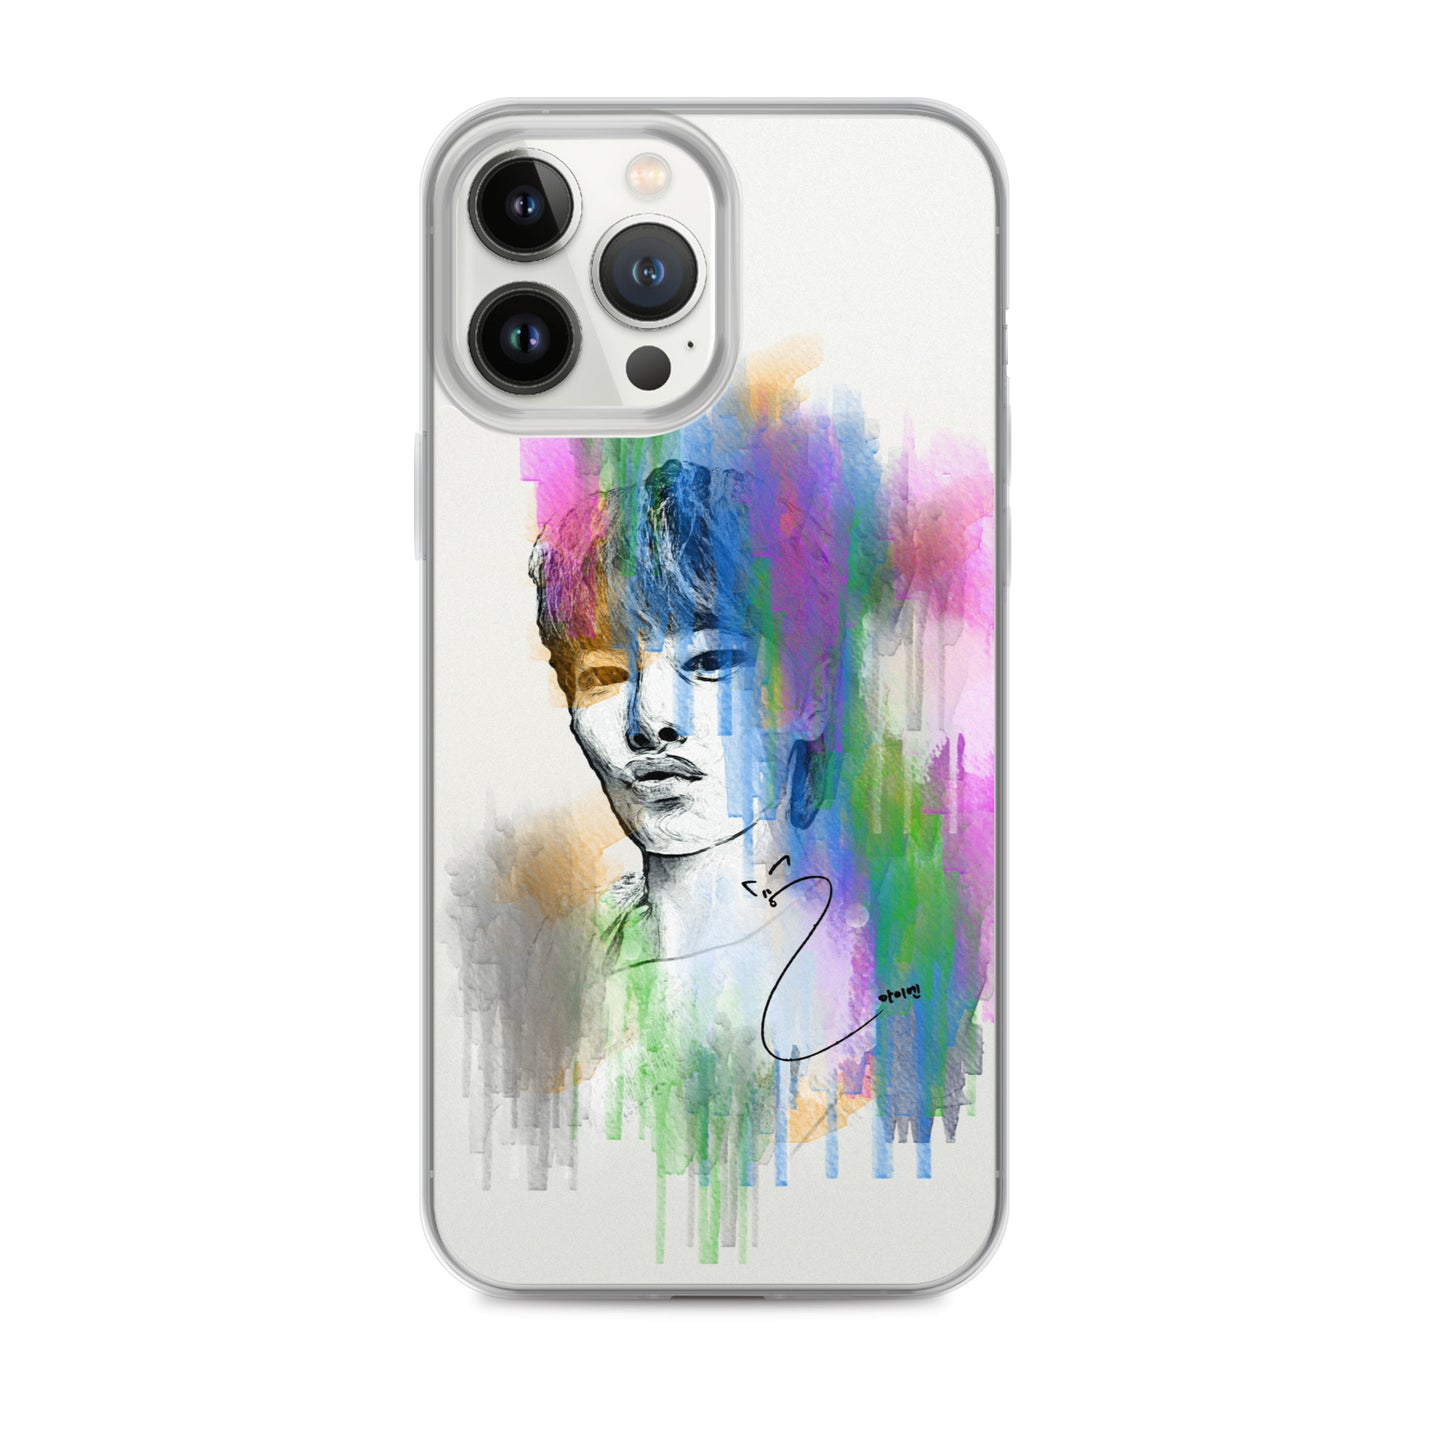 Stray Kids I.N, Yang Jeong-in Waterpaint Portrait iPhone Case